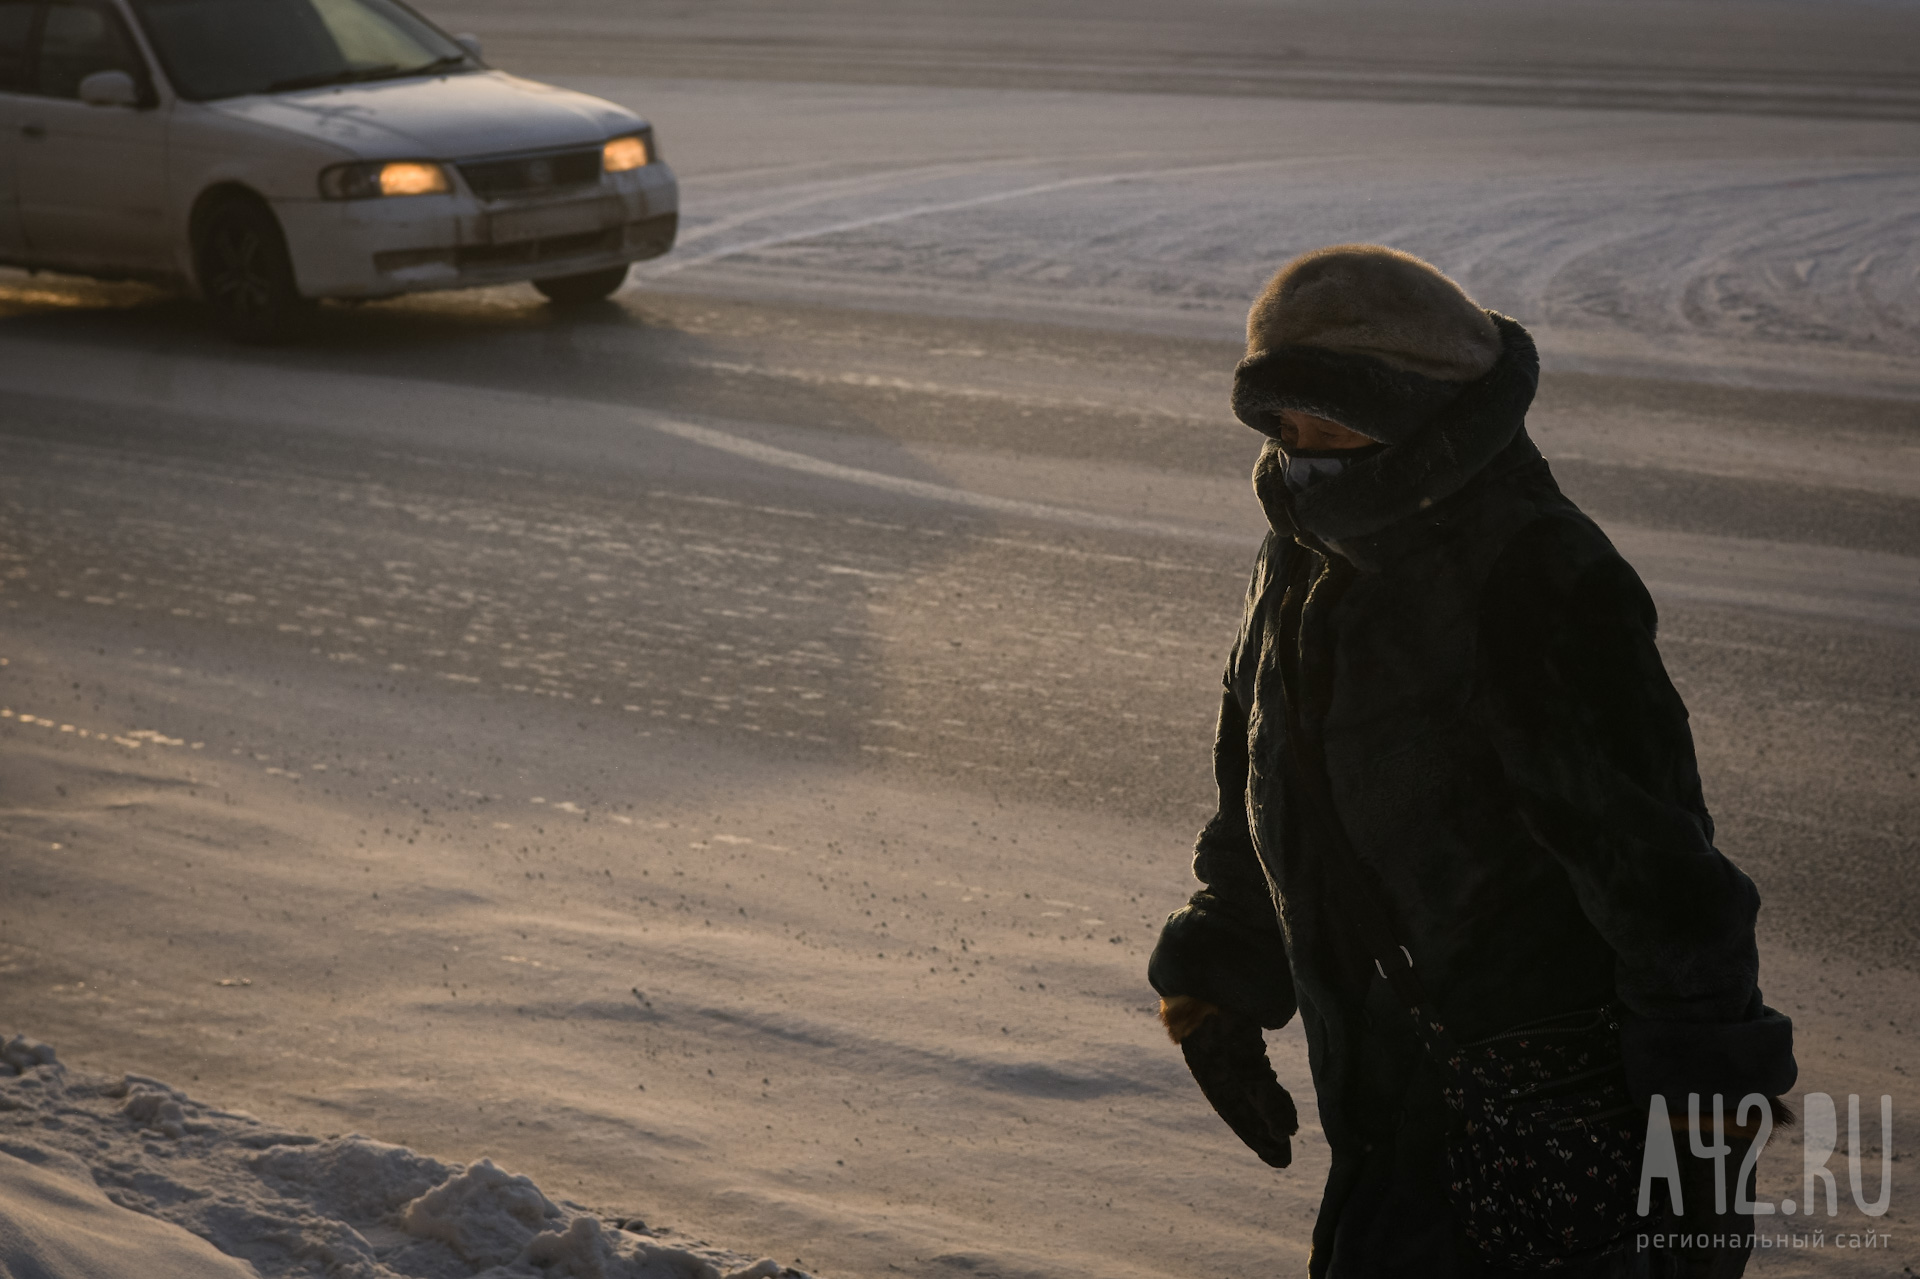 До -37 градусов опустится температура ночью в Кузбассе